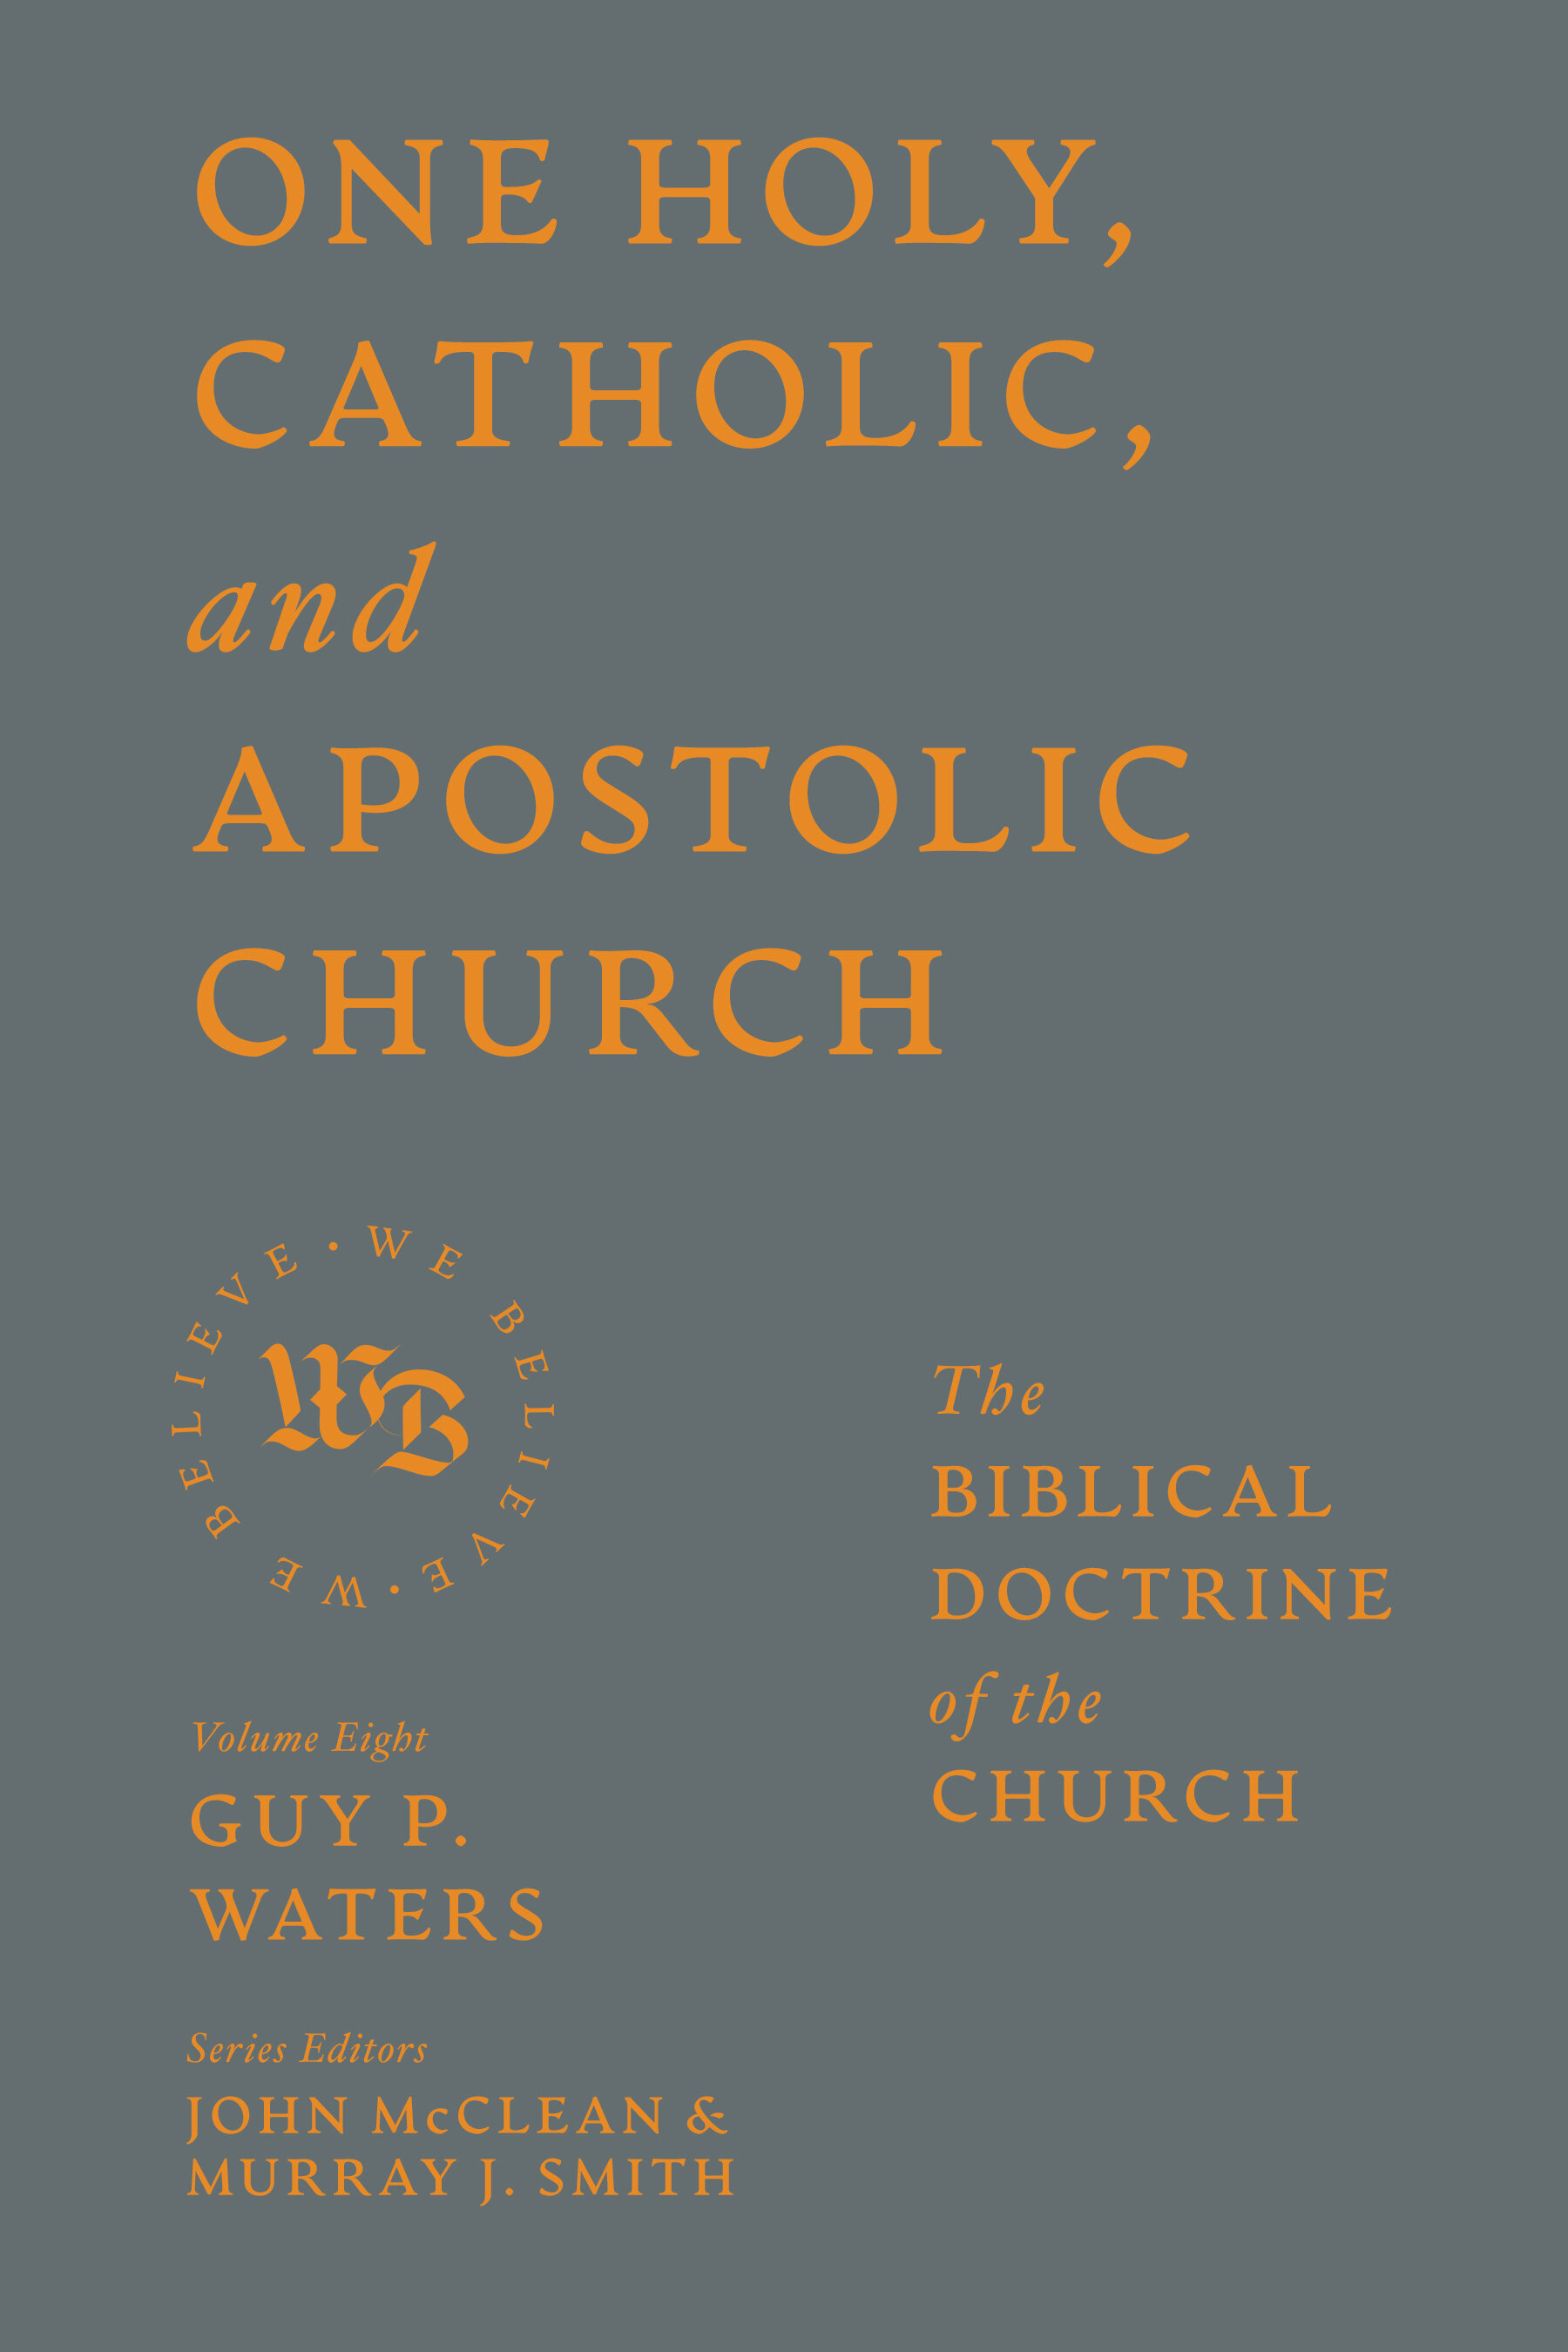 One Holy, Catholic, and Apostolic Church